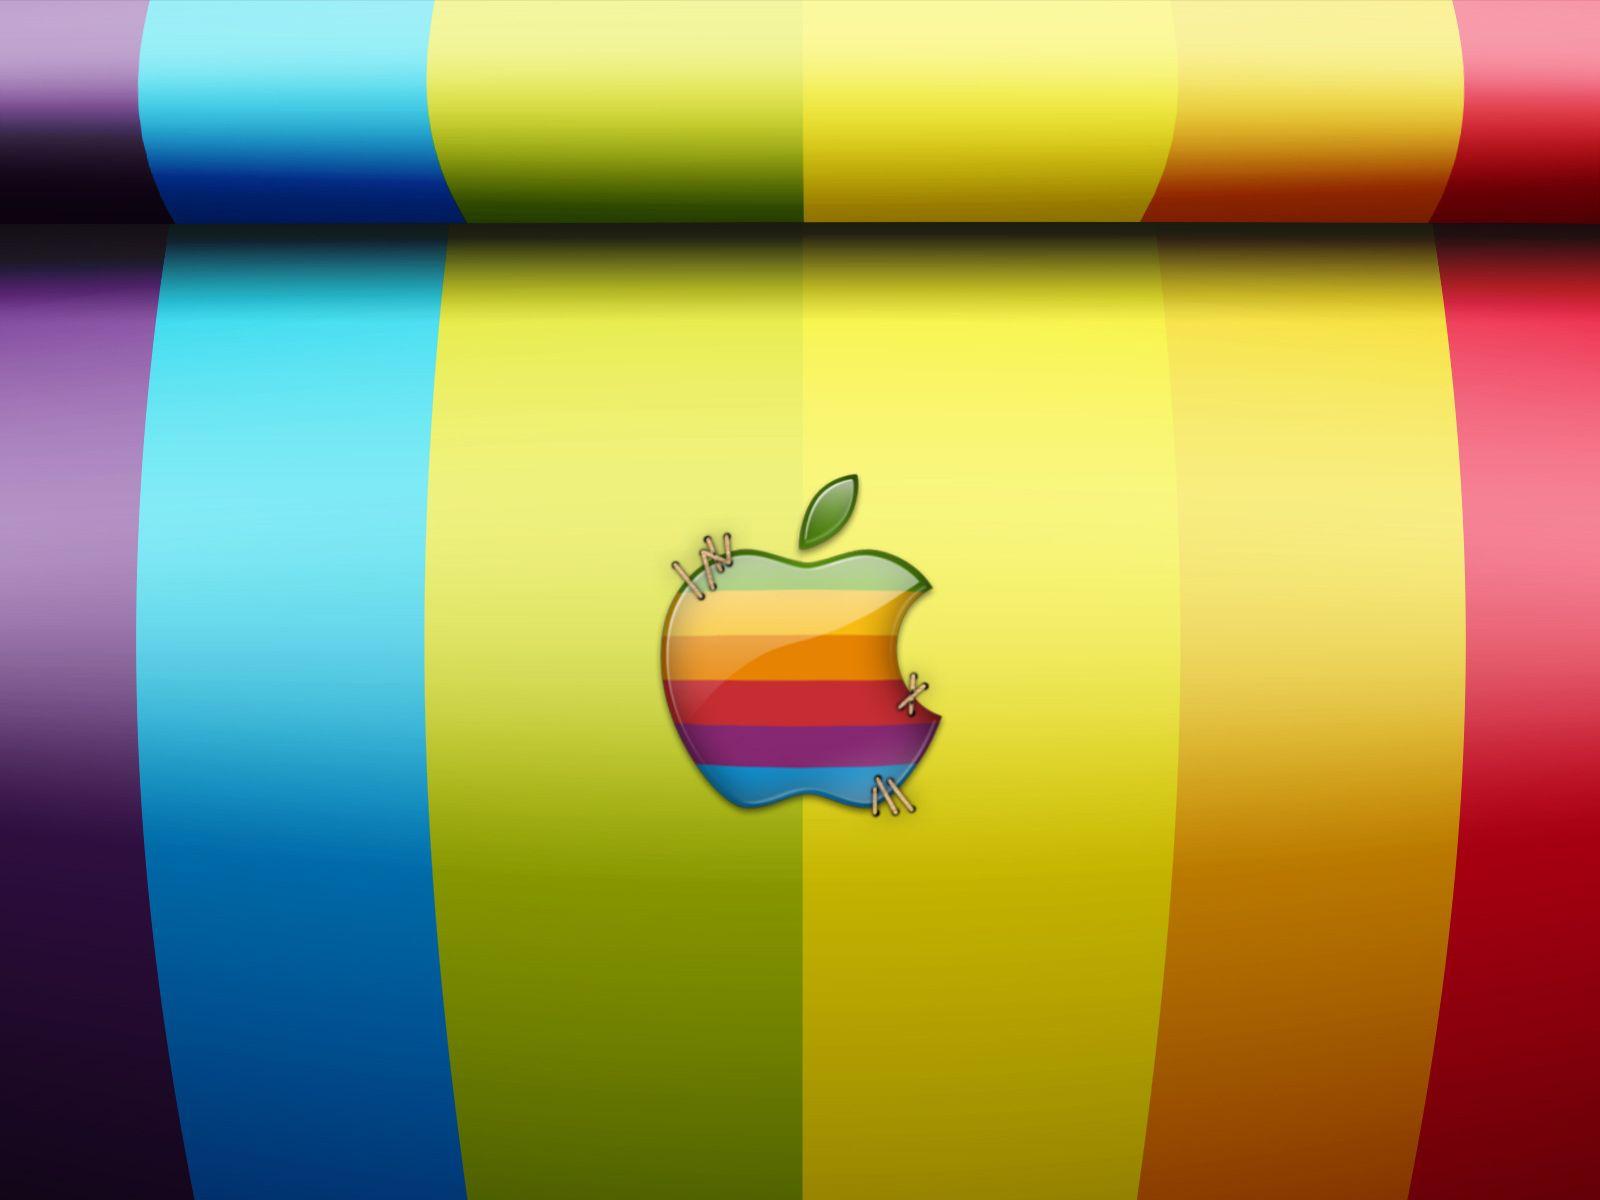 Apple Mac OS Wallpaper. High Quality Wallpaper, Wallpaper Desktop